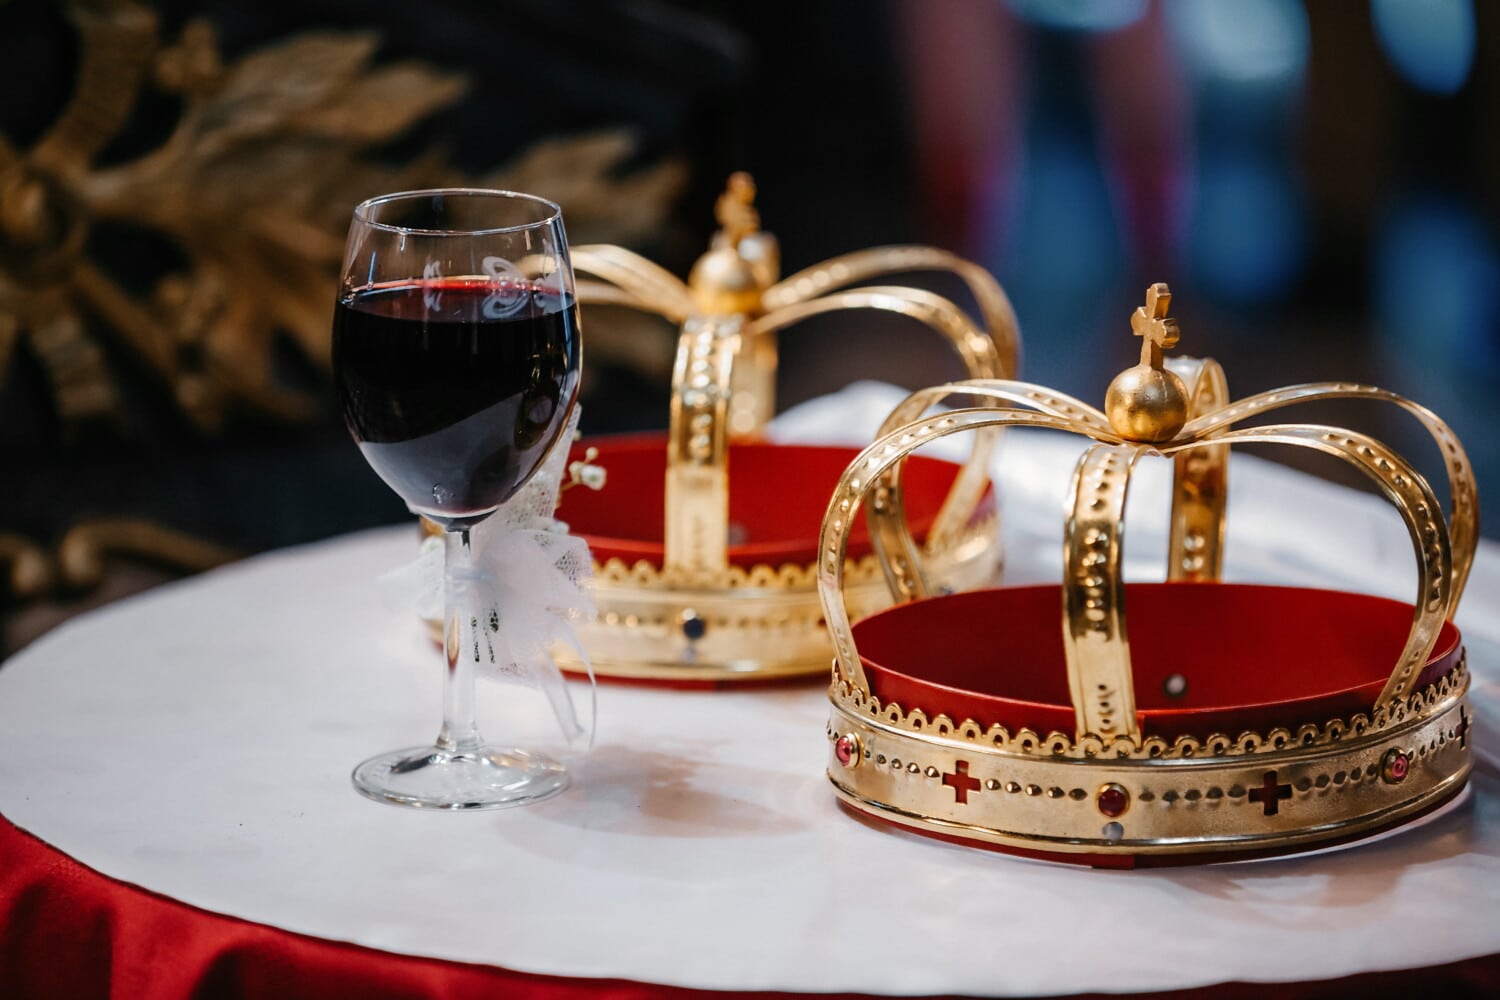 Mahkota, pemahkotaan, emas, anggur merah, agama, Kristen, Ortodoks, minuman, mewah, kaca